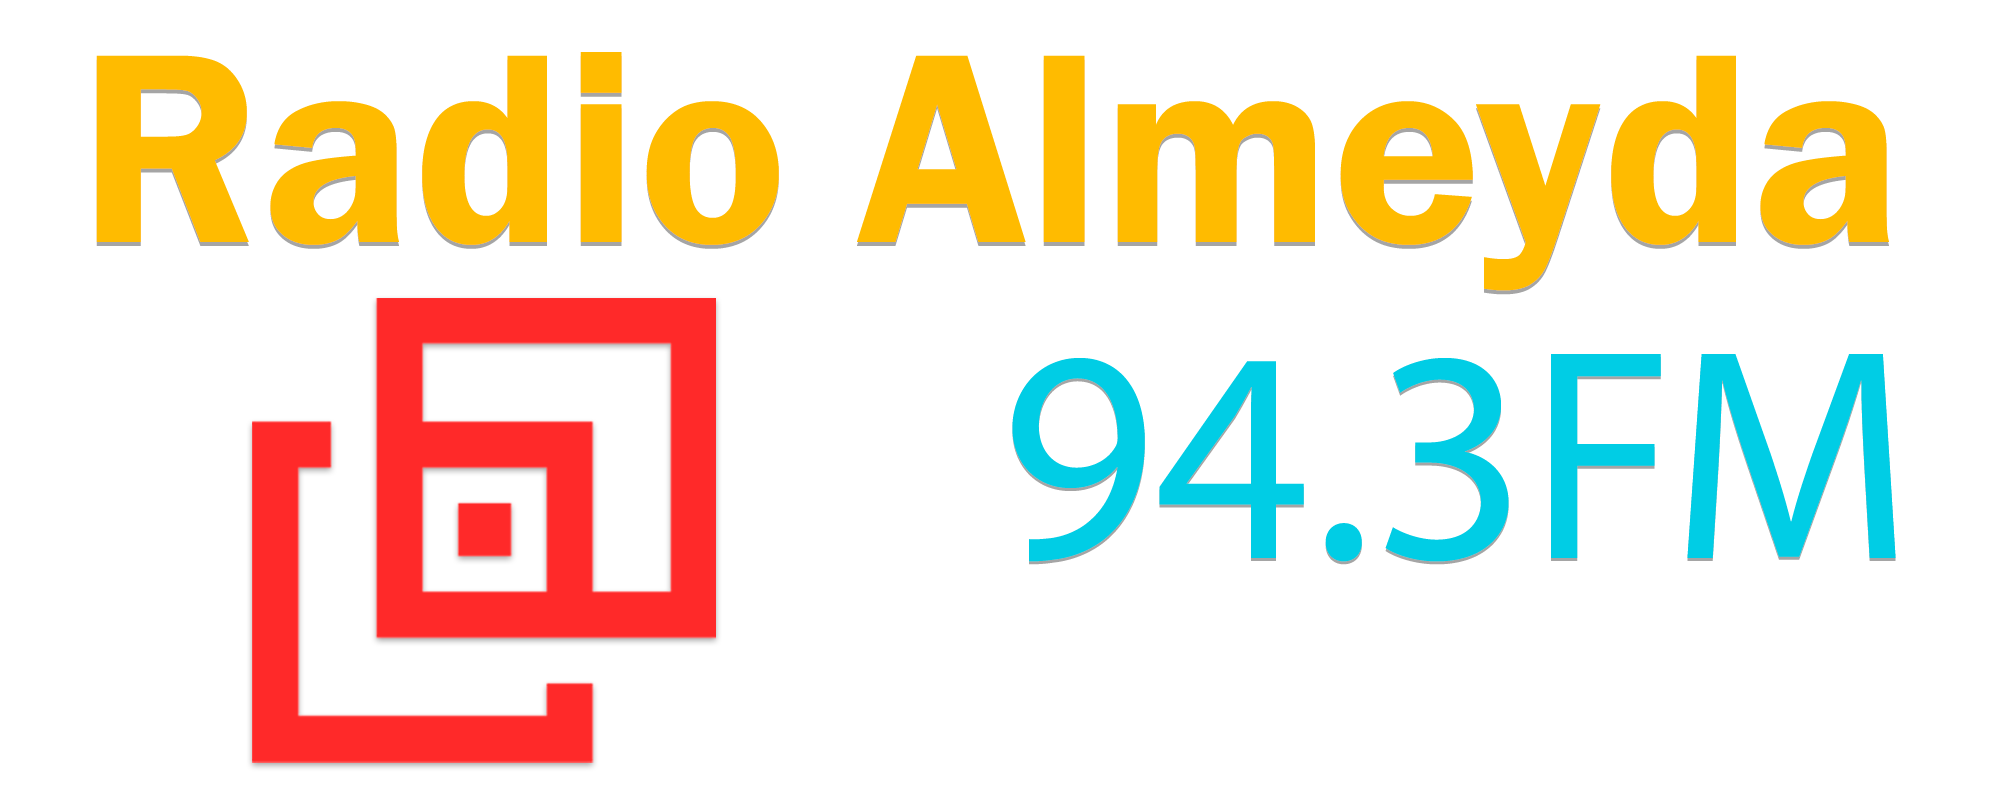 Radio Almeyda 